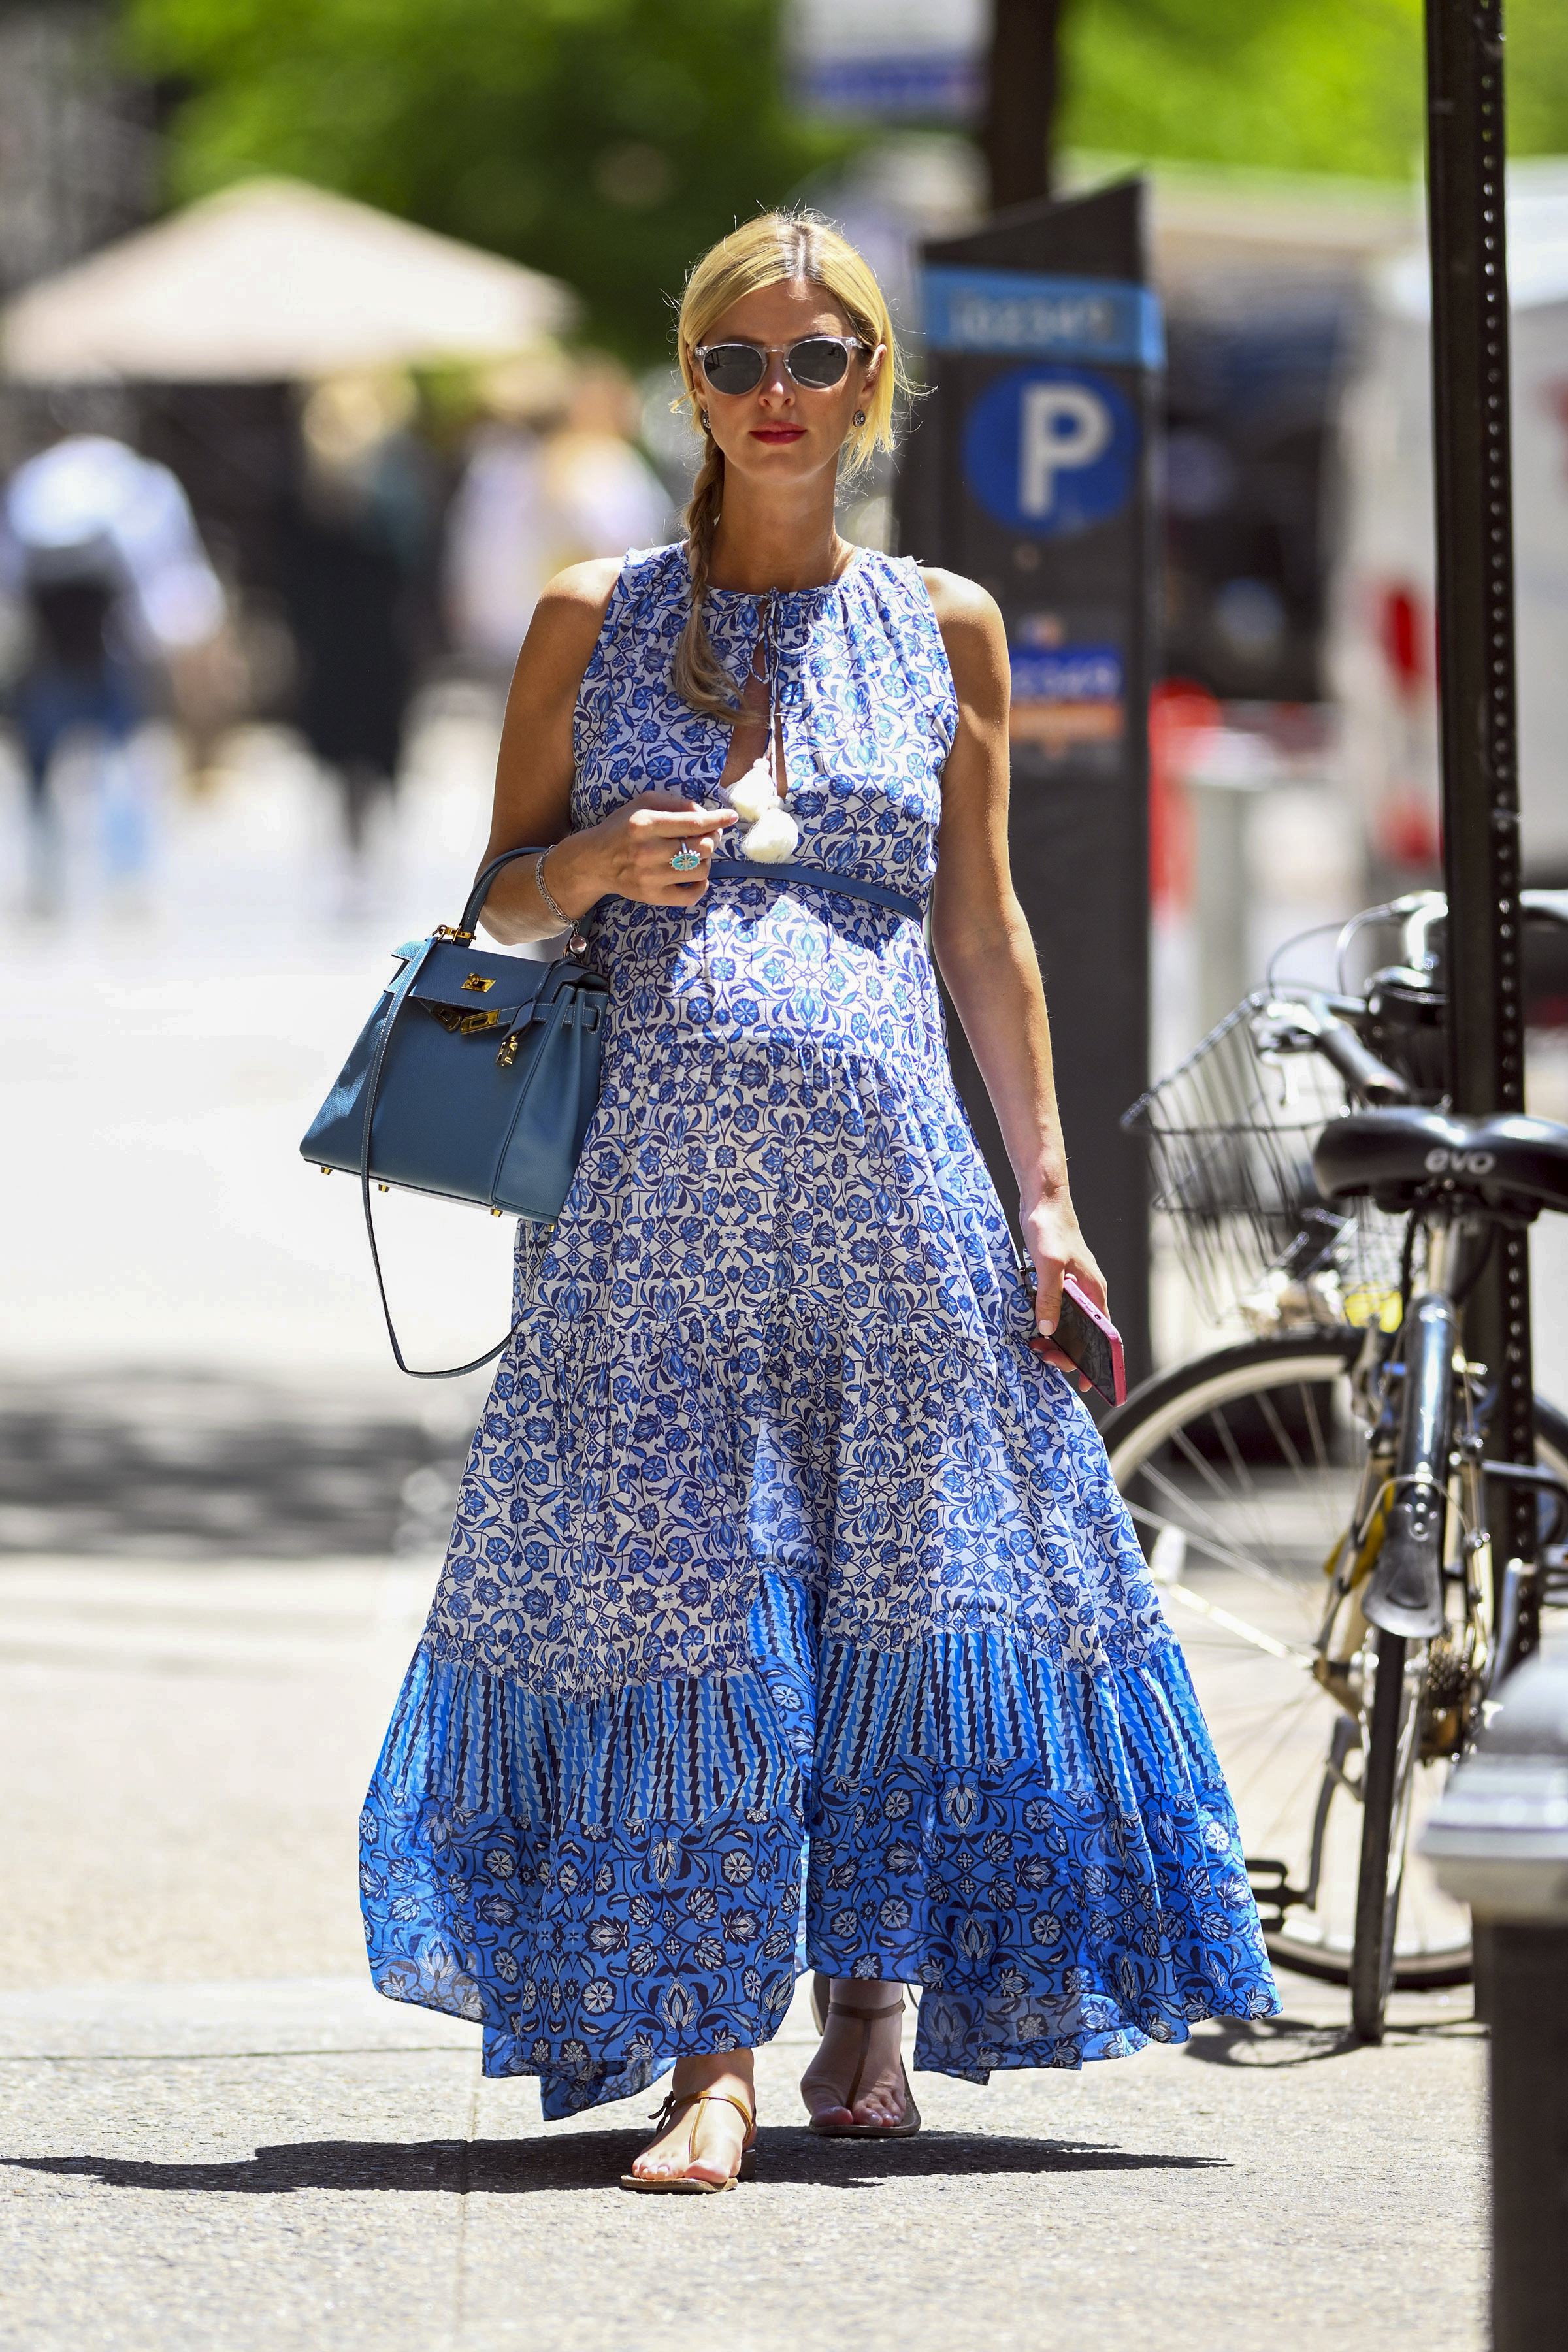 Nicky Hilton recorrió las tiendas más exclusivas de Manhattan, en Nueva York. Lució un vestido azul estampado que combinó con su cartera de cuero y con el que mostró su embarazo